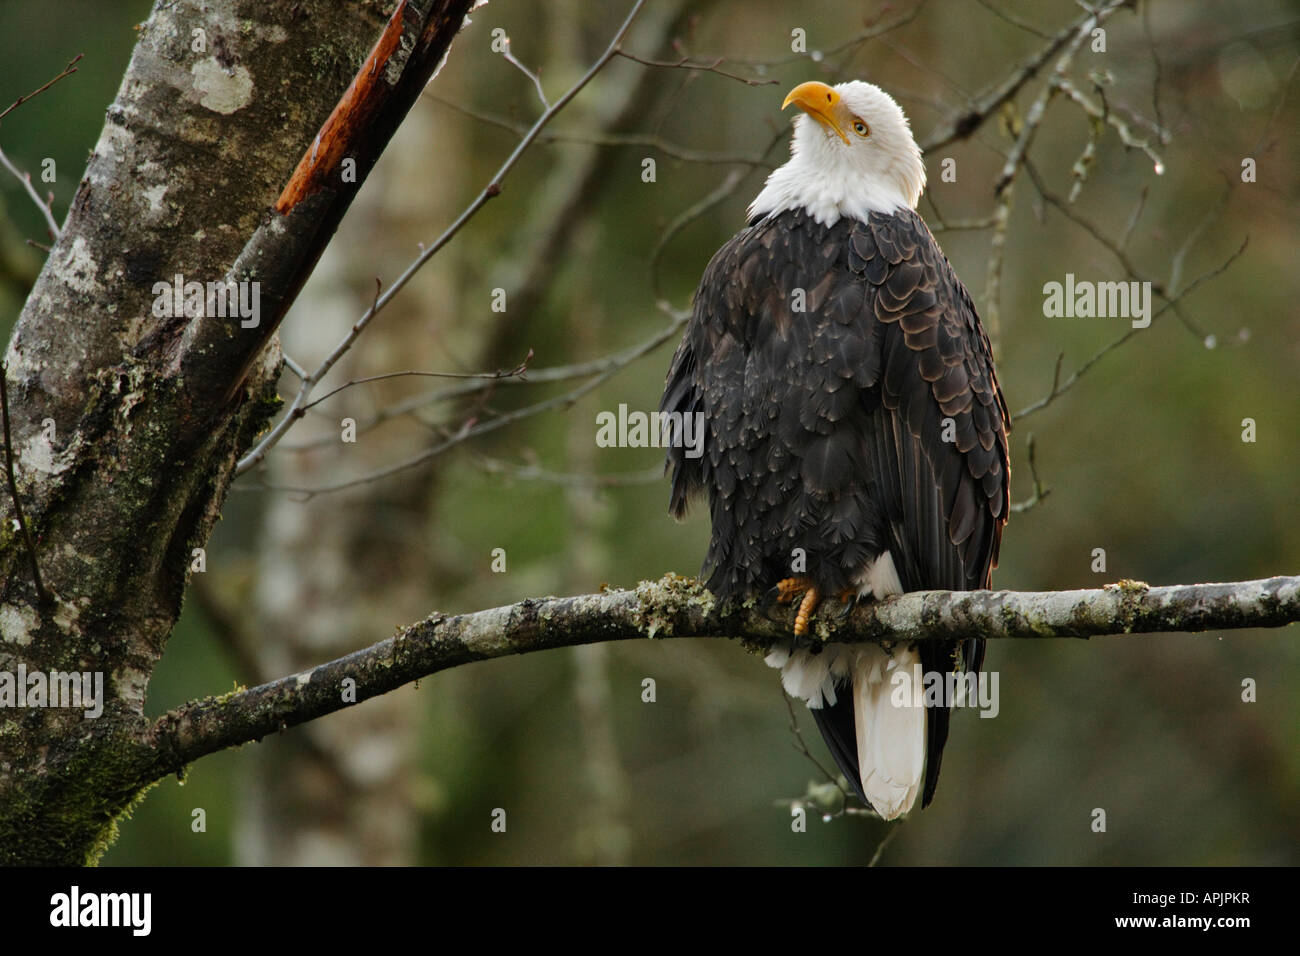 Bald eagle on perch in coasal temperate rainforest Victoria British Columbia Canada Stock Photo